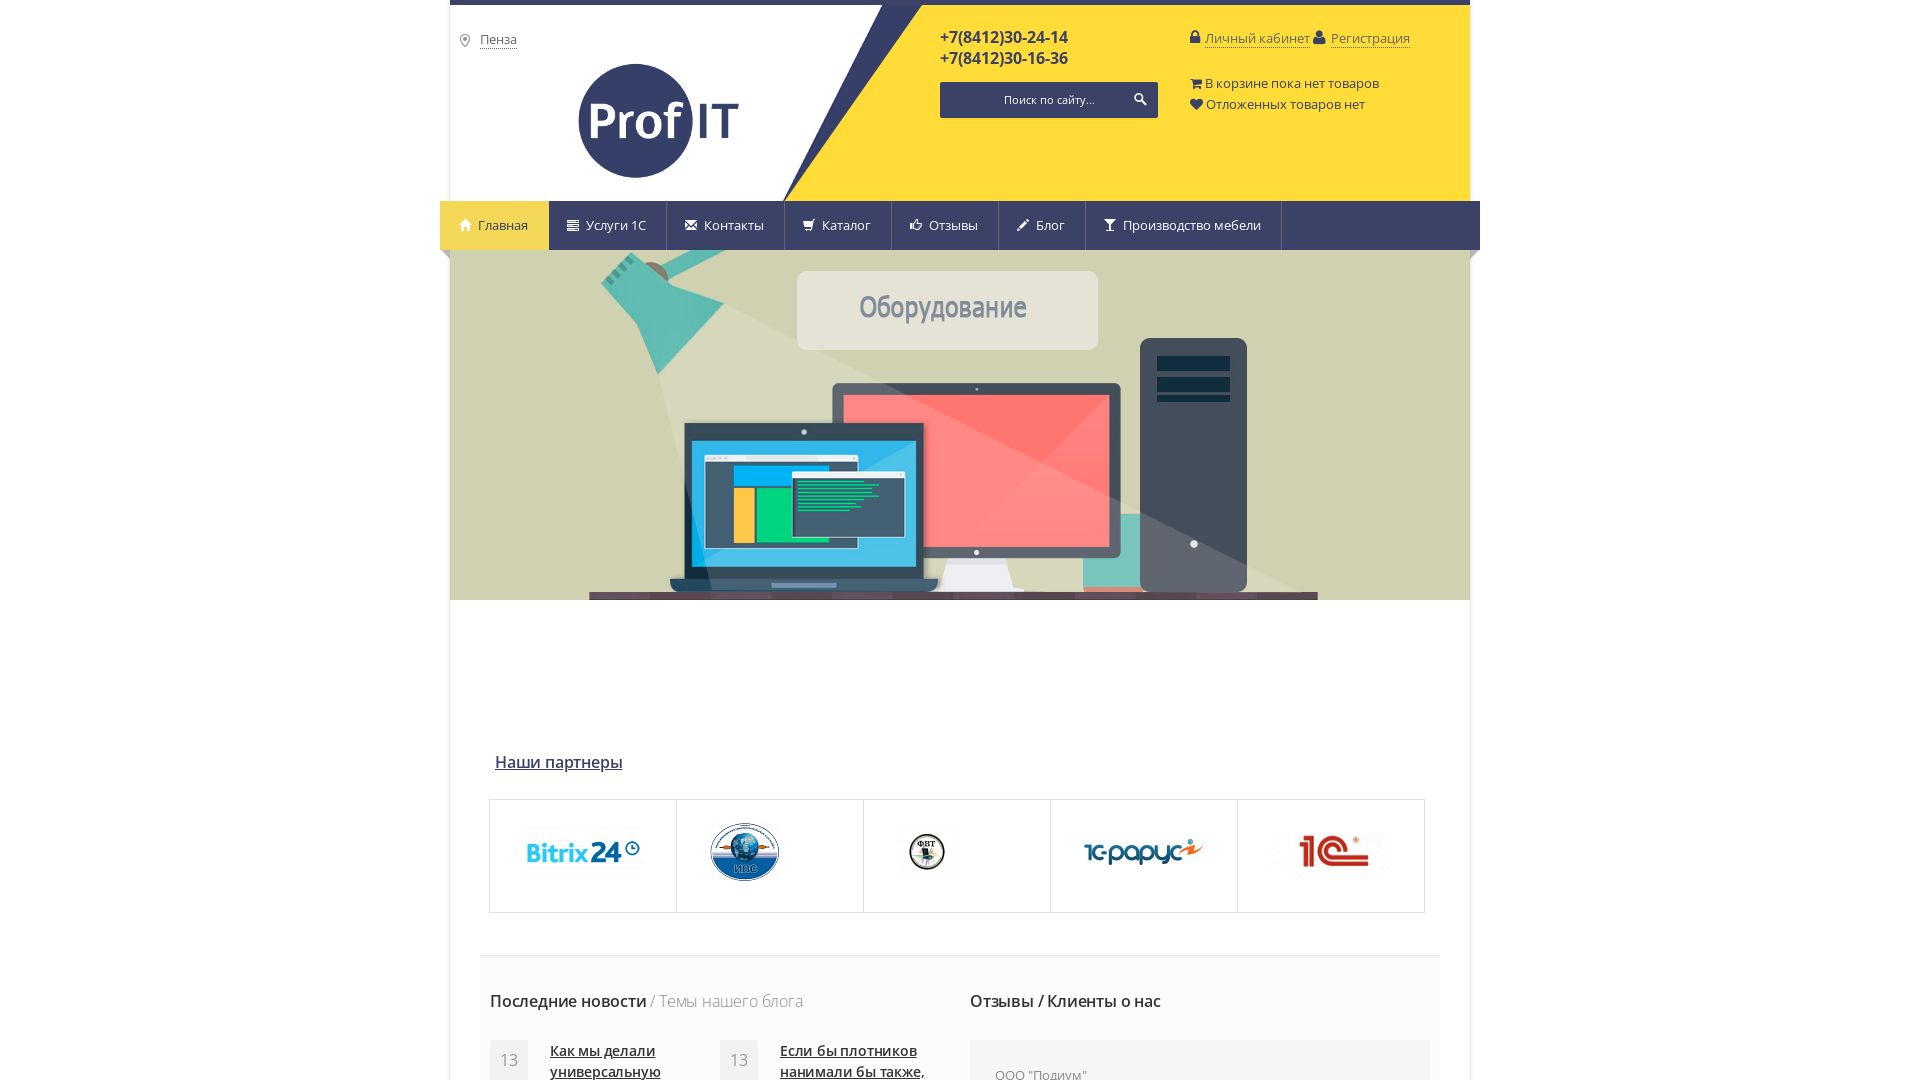 Website status 1-profit.ru is   ONLINE